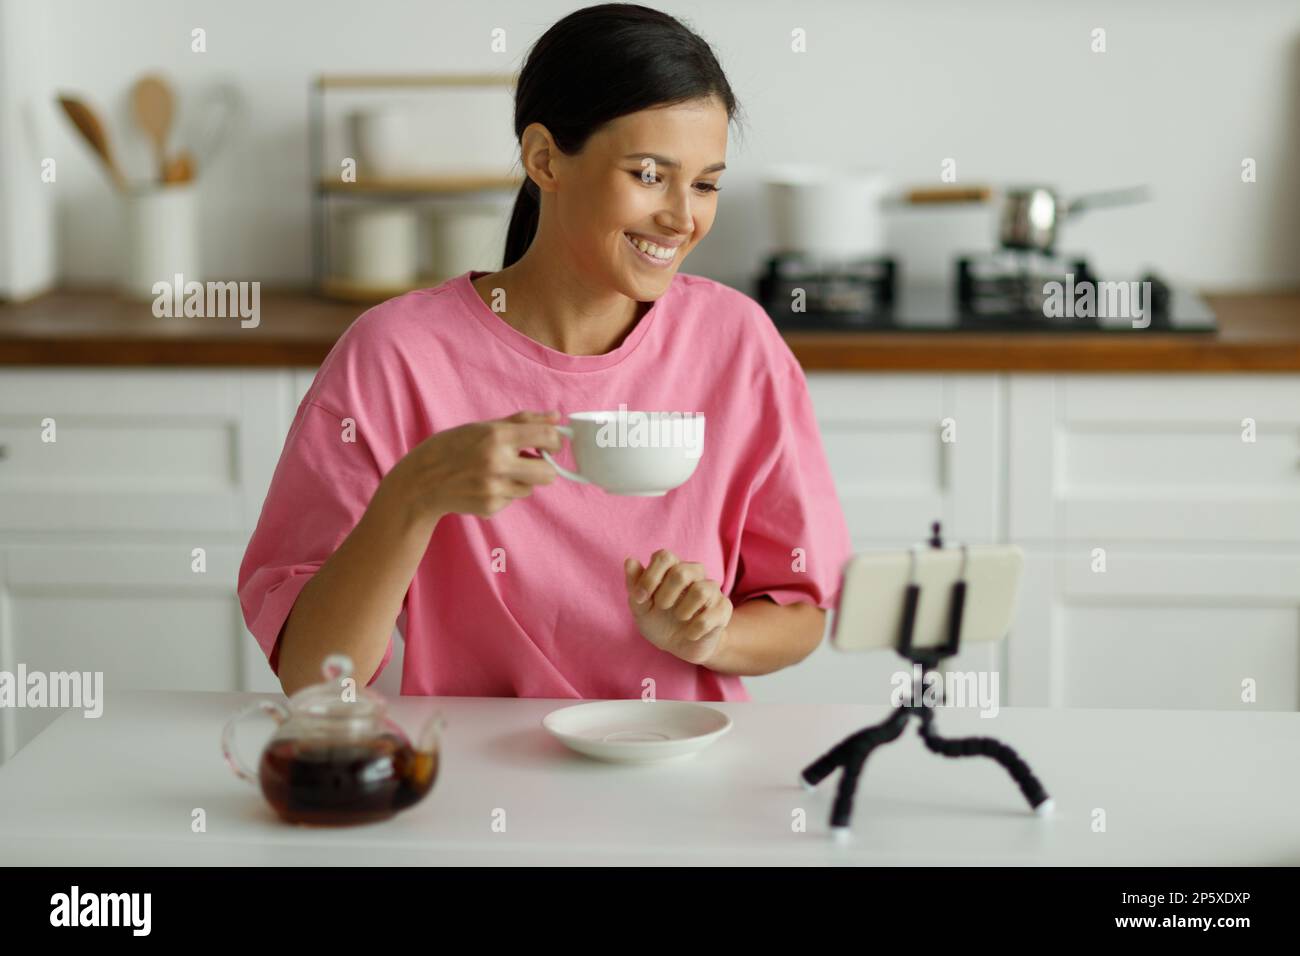 La mujer morena joven sonriente atractiva en la camiseta oversize rosa está bebiendo té en la cocina. Muchacha bonita feliz con la sonrisa blanca como la nieve saluda amigo, co Foto de stock